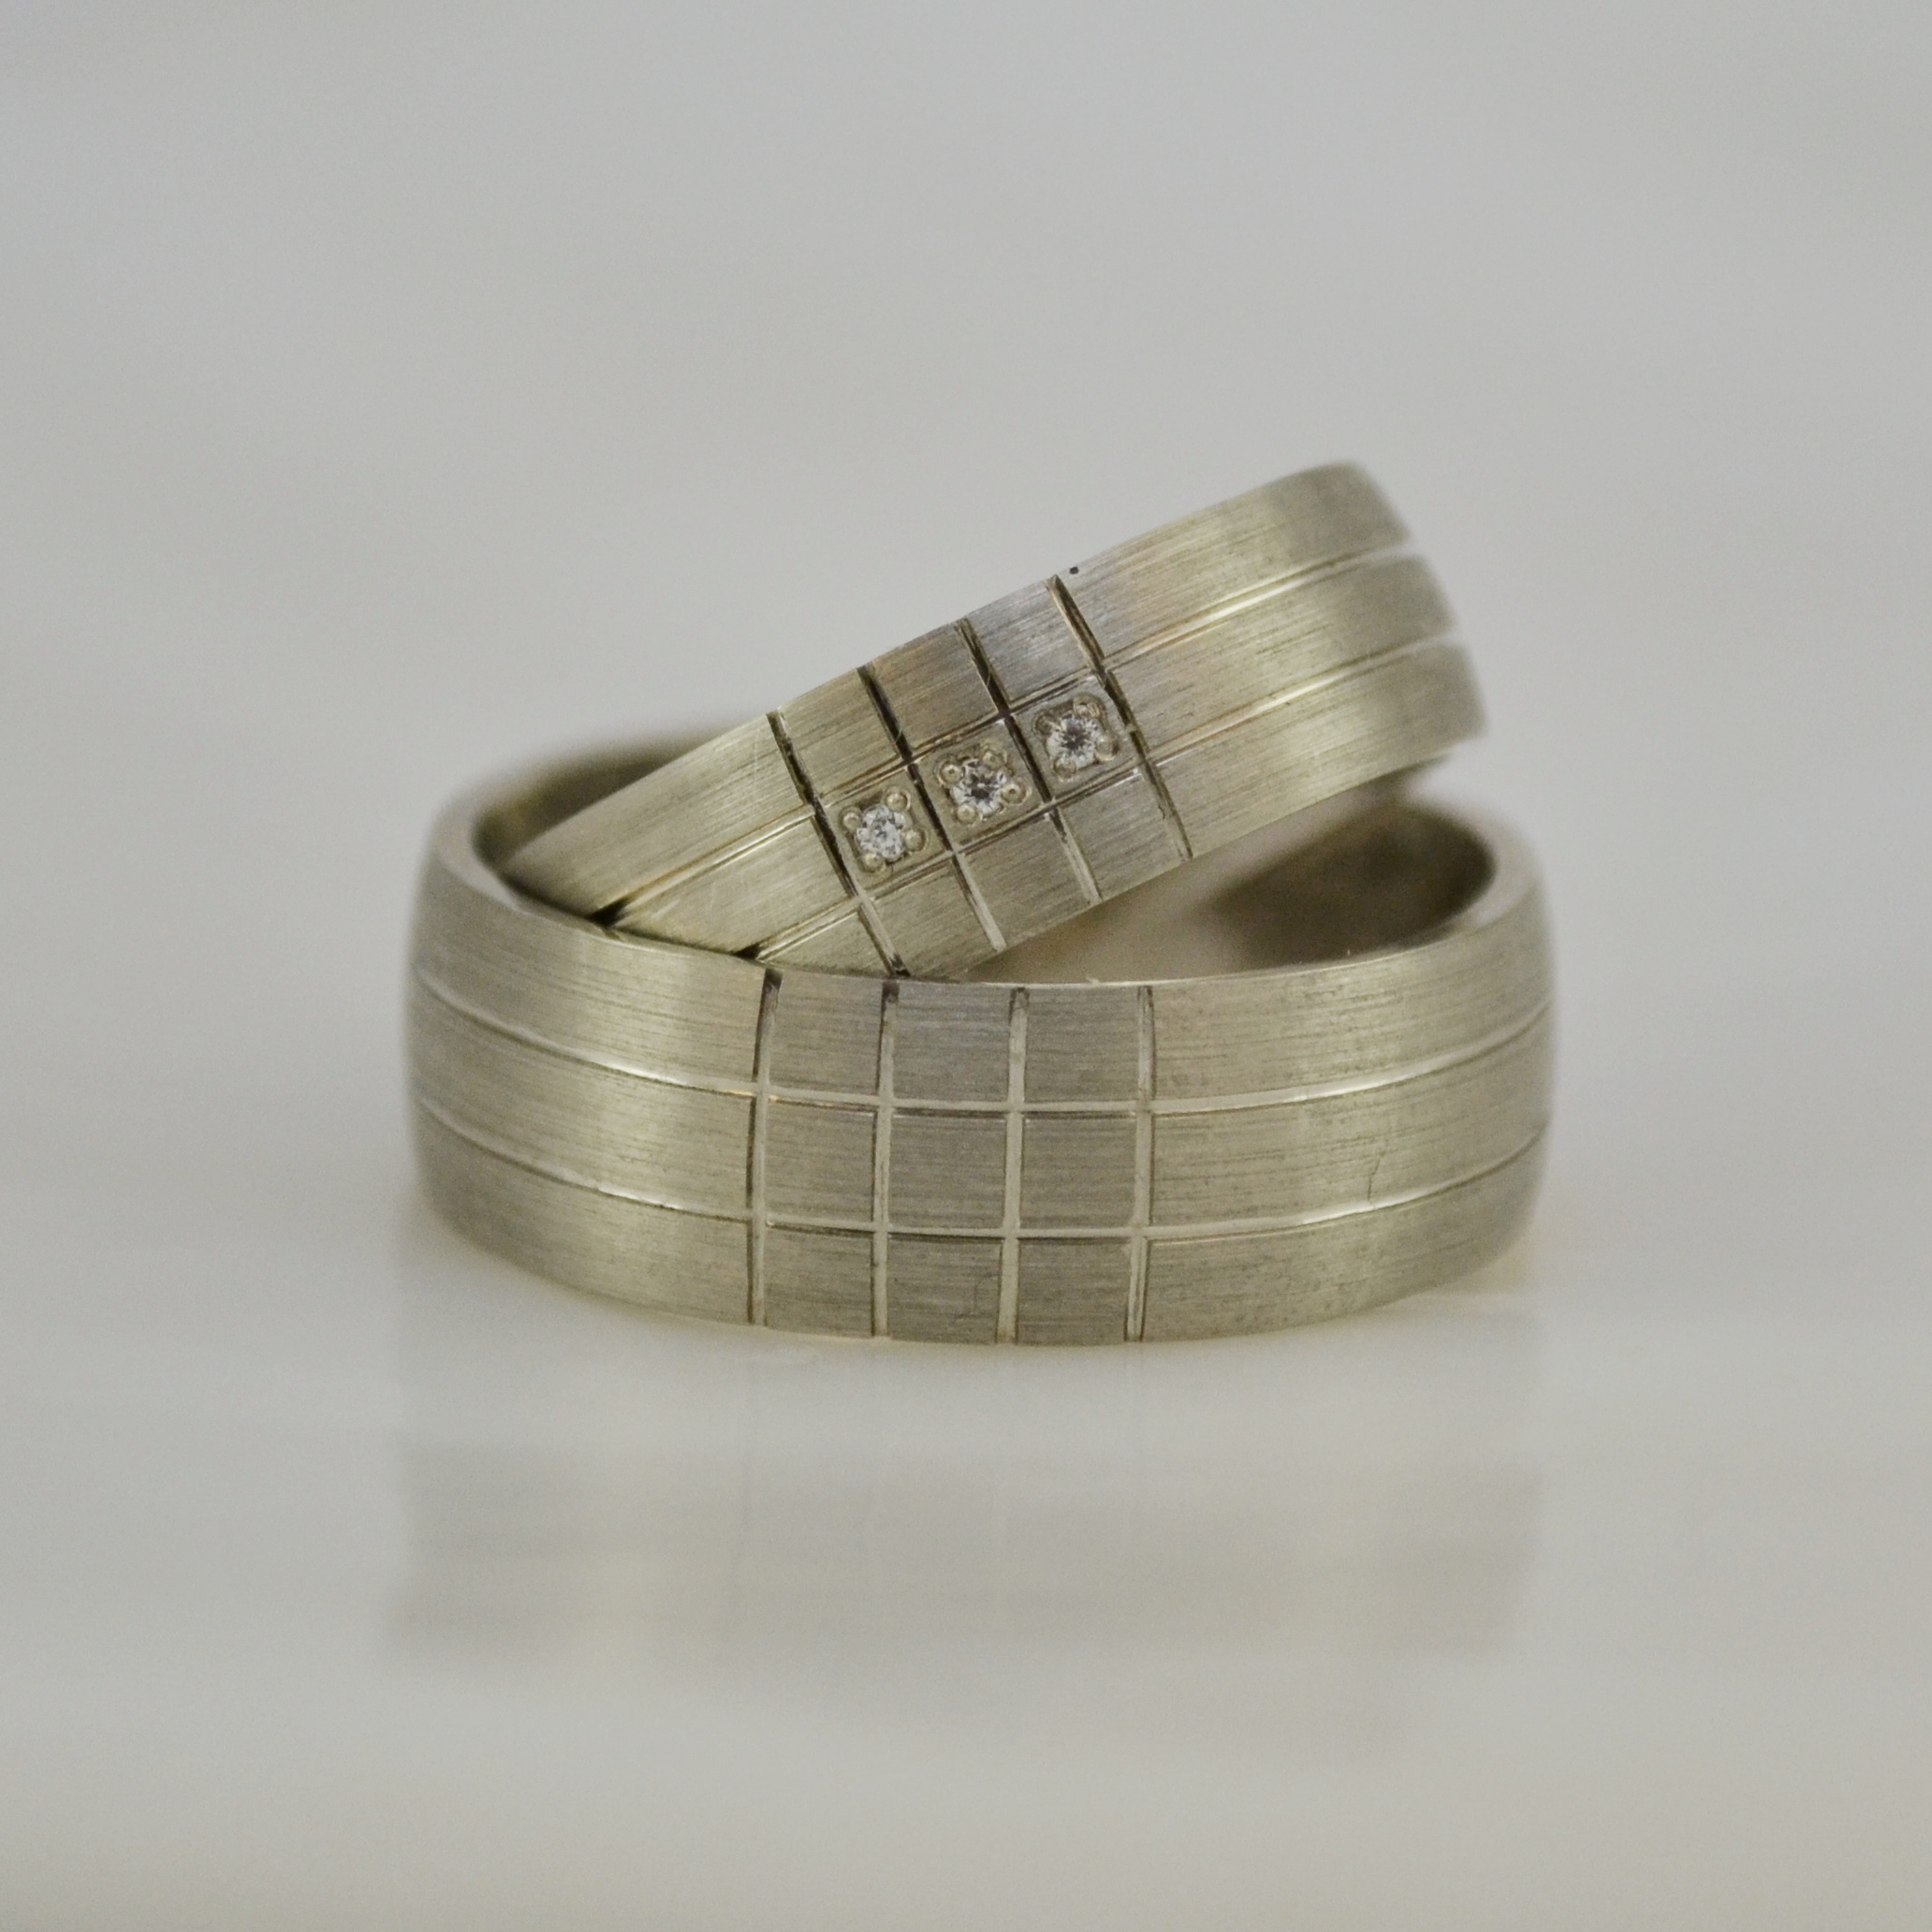 Обручальные кольца с фактурной поверхностью и бриллиантами на заказ (Вес пары: 15 гр.)